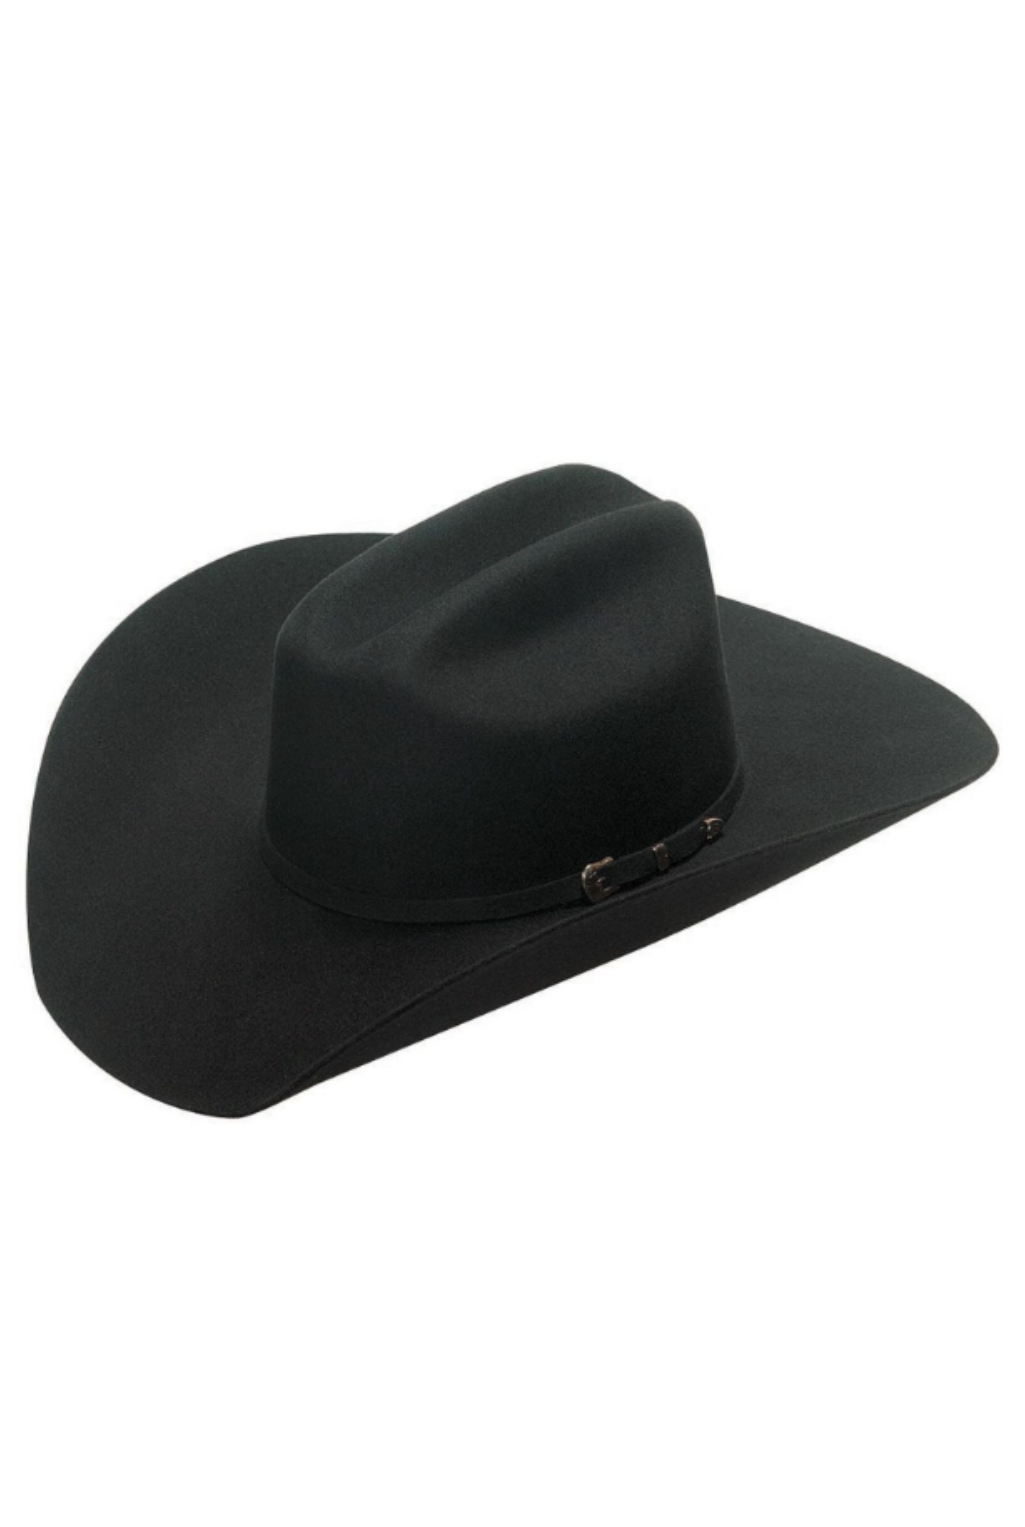 Santa Fe Hat - Black